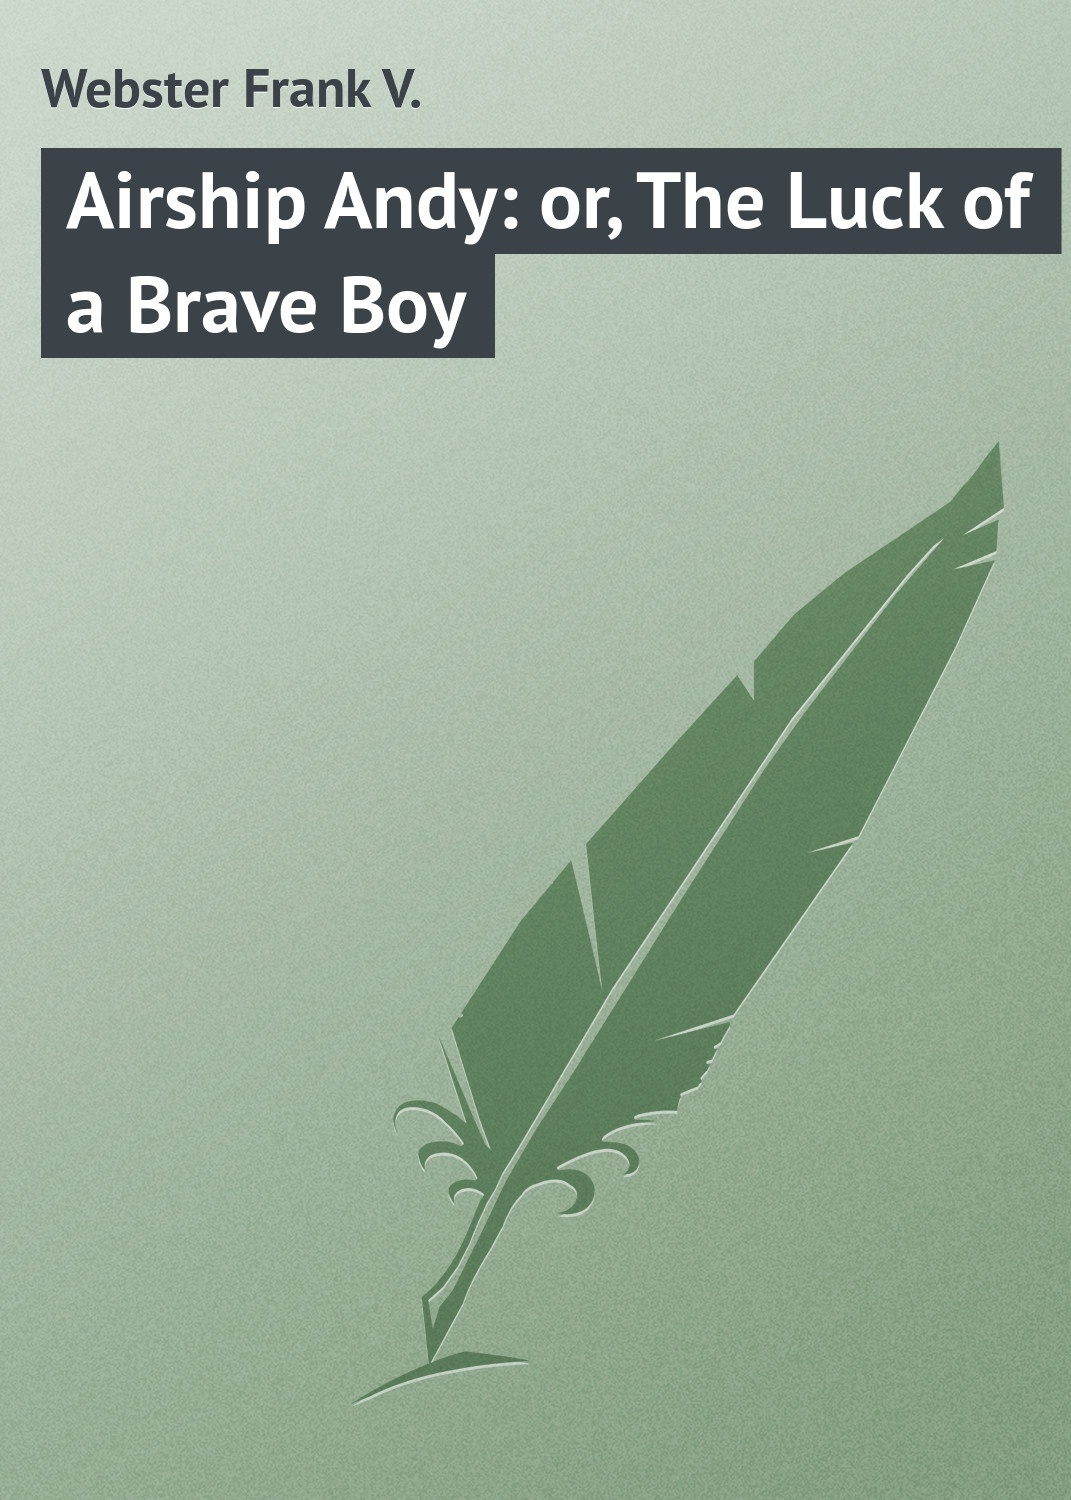 Книга Airship Andy: or, The Luck of a Brave Boy из серии , созданная Frank Webster, может относится к жанру Классические детективы, Зарубежные детективы, Зарубежная классика. Стоимость электронной книги Airship Andy: or, The Luck of a Brave Boy с идентификатором 23147747 составляет 5.99 руб.